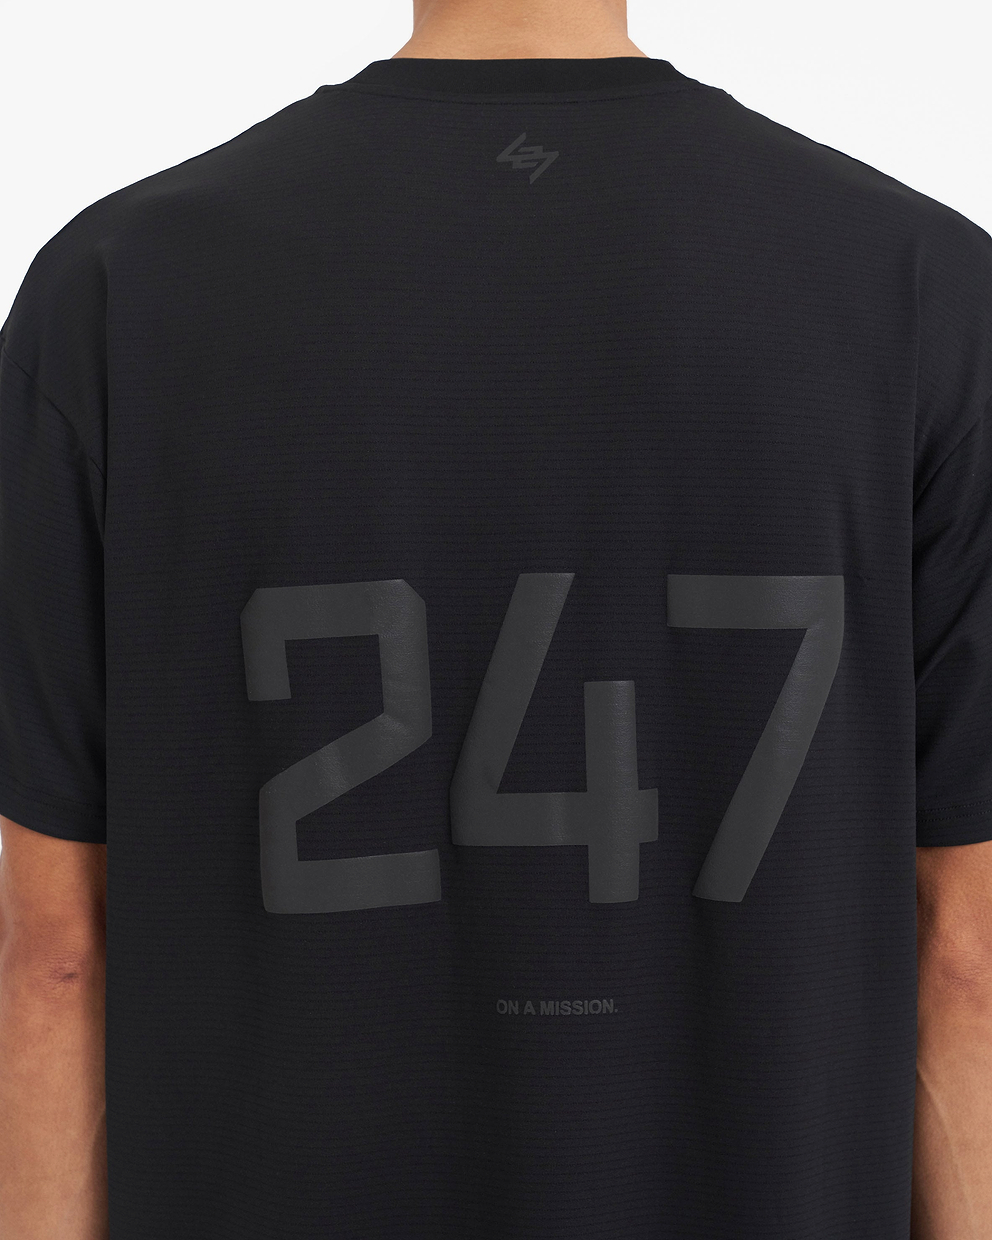 Team 247 Oversized T-Shirt, Black